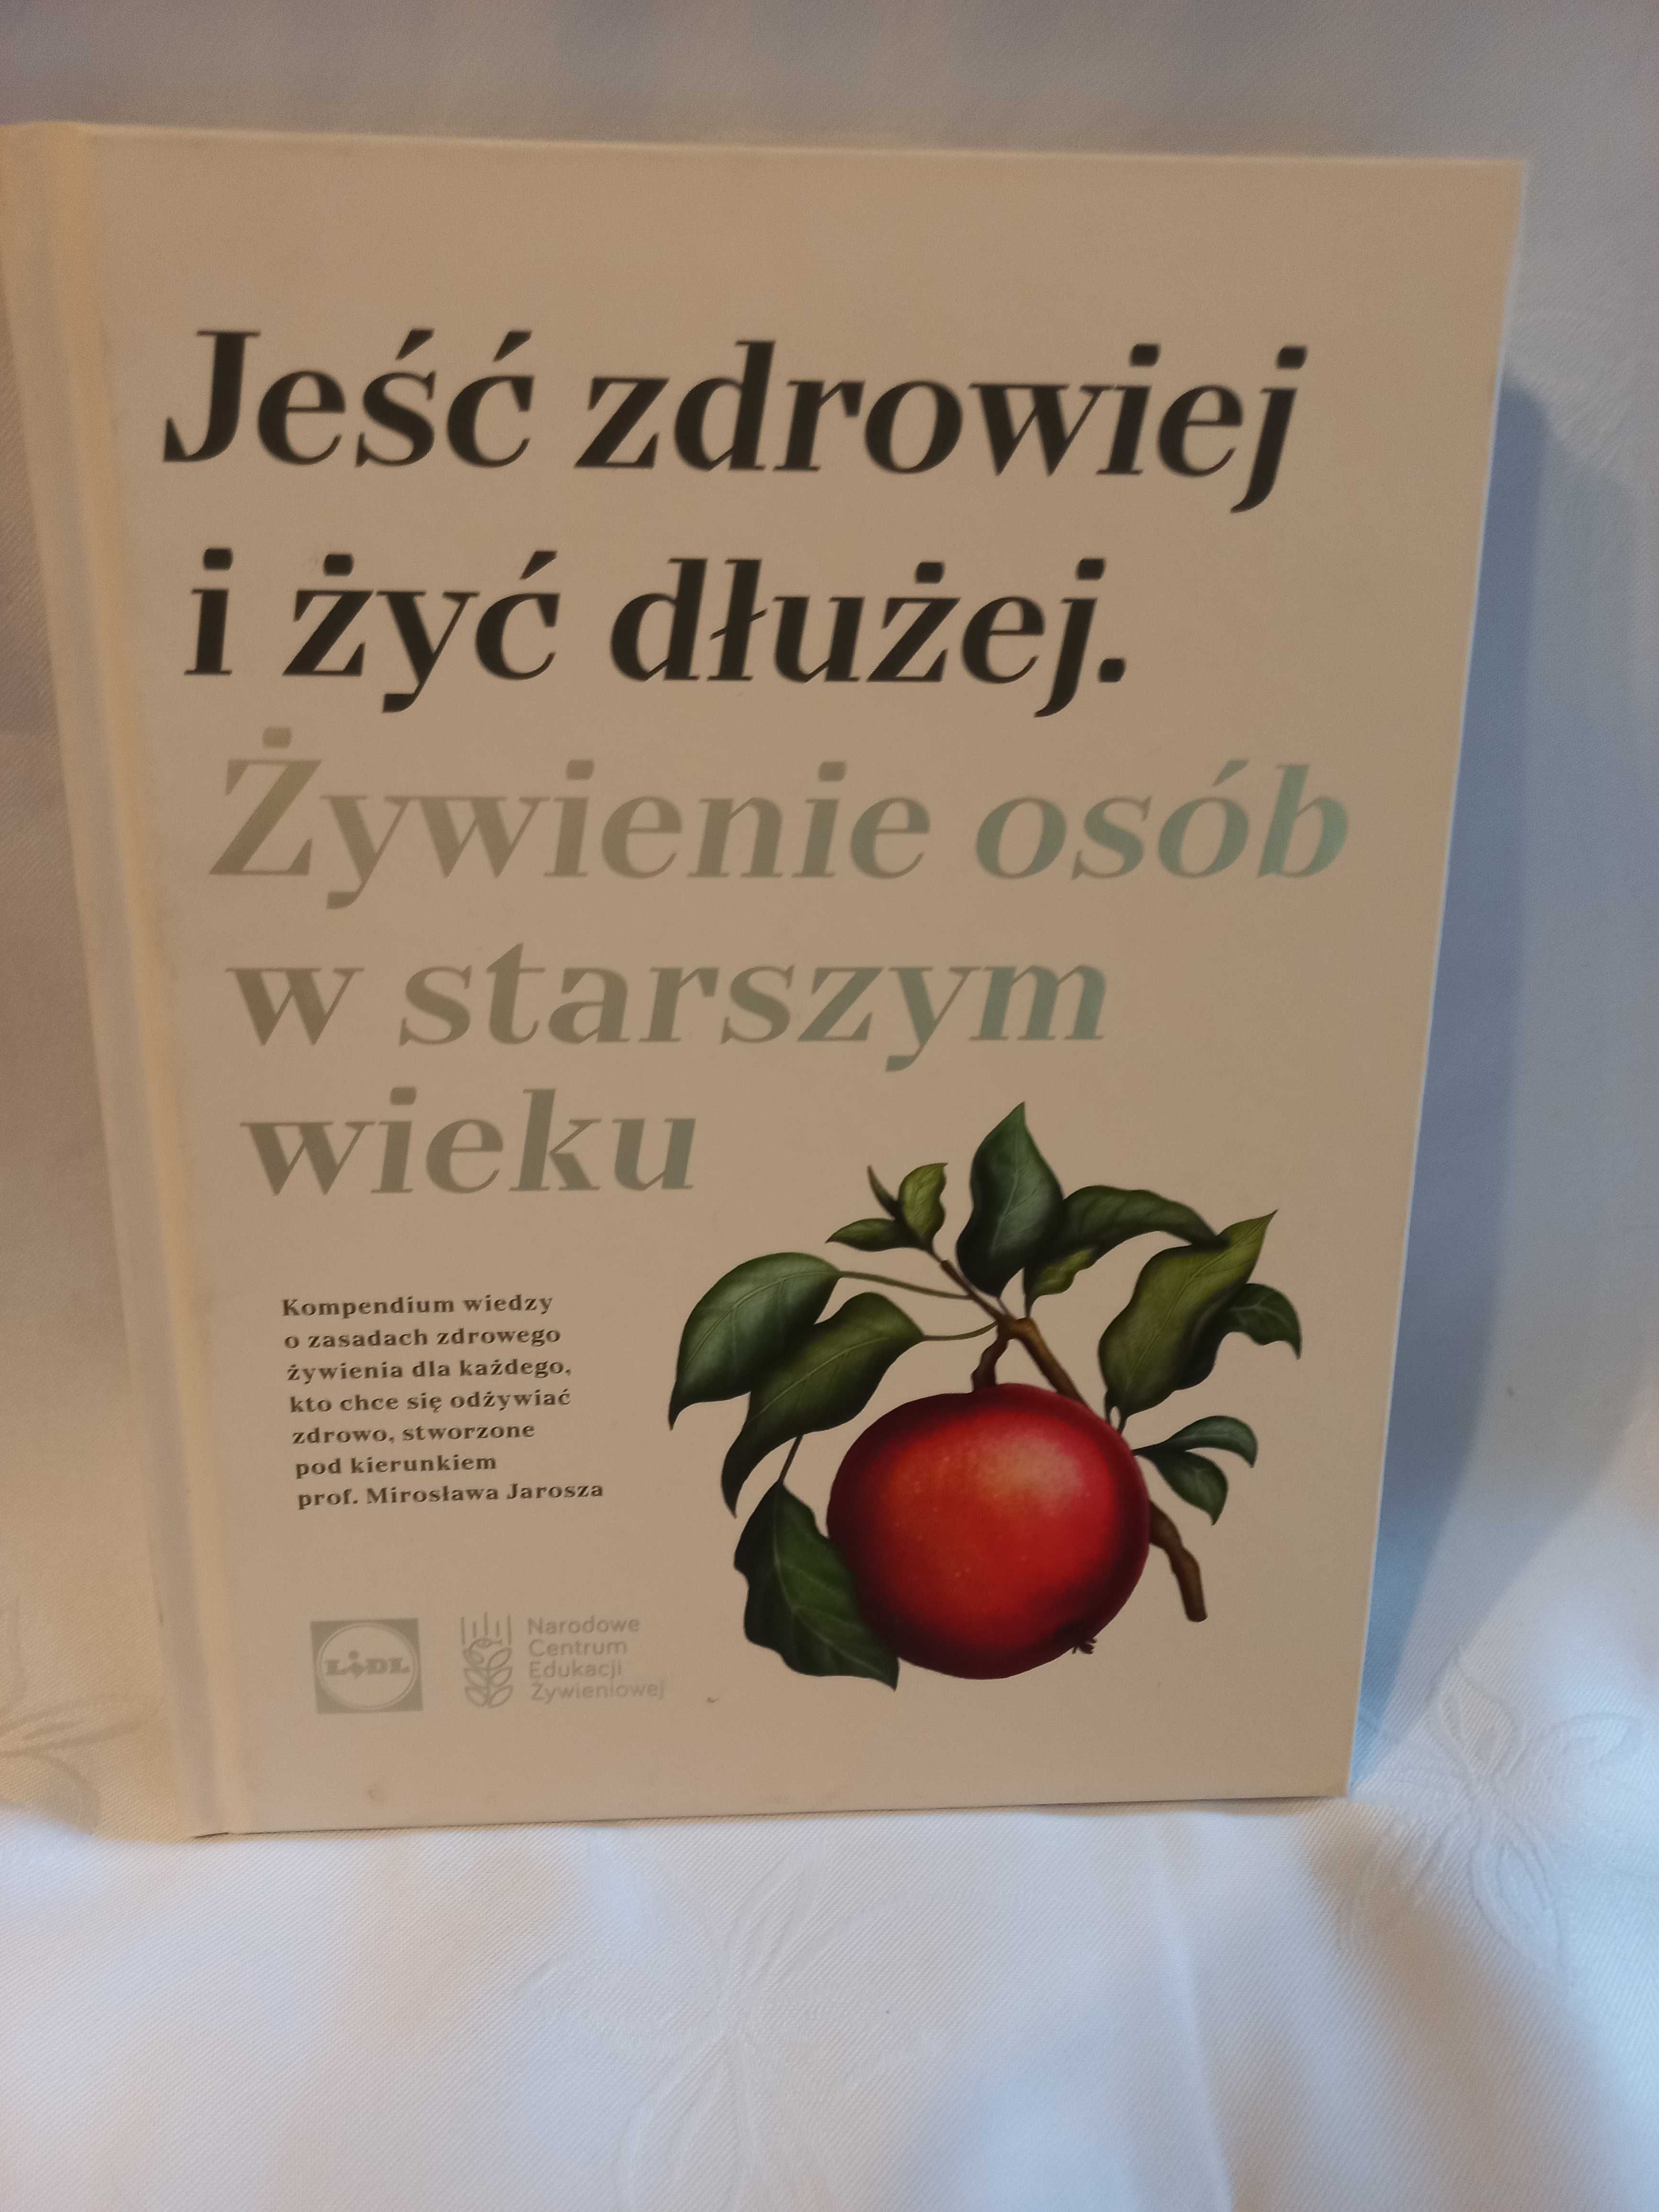 Książki/ poradniki z Lidla - cena za zestaw